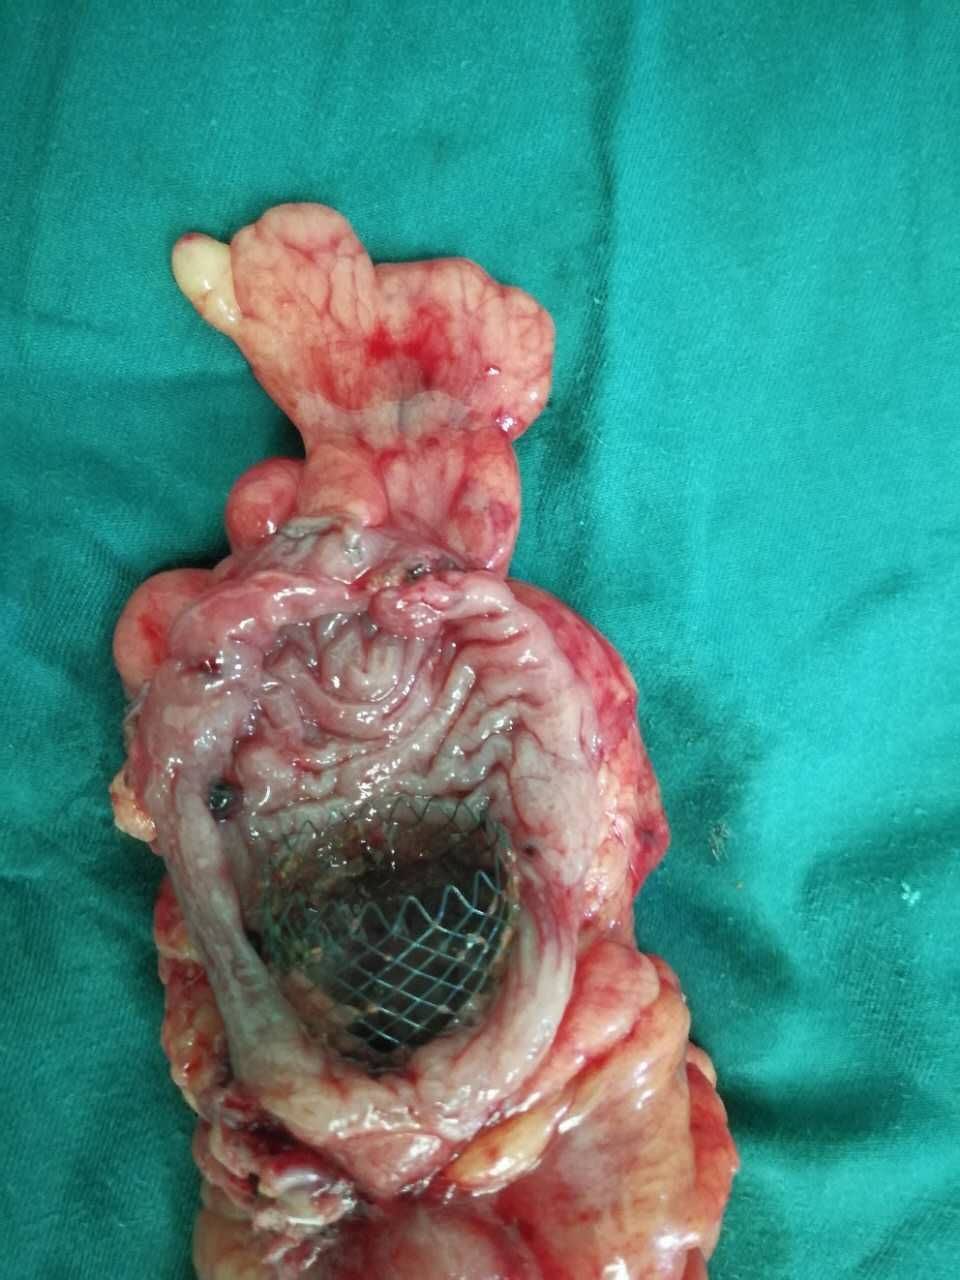 一周后顺利手术,上图为肿瘤切除后看到支架将梗阻肠段完全撑开了肠道